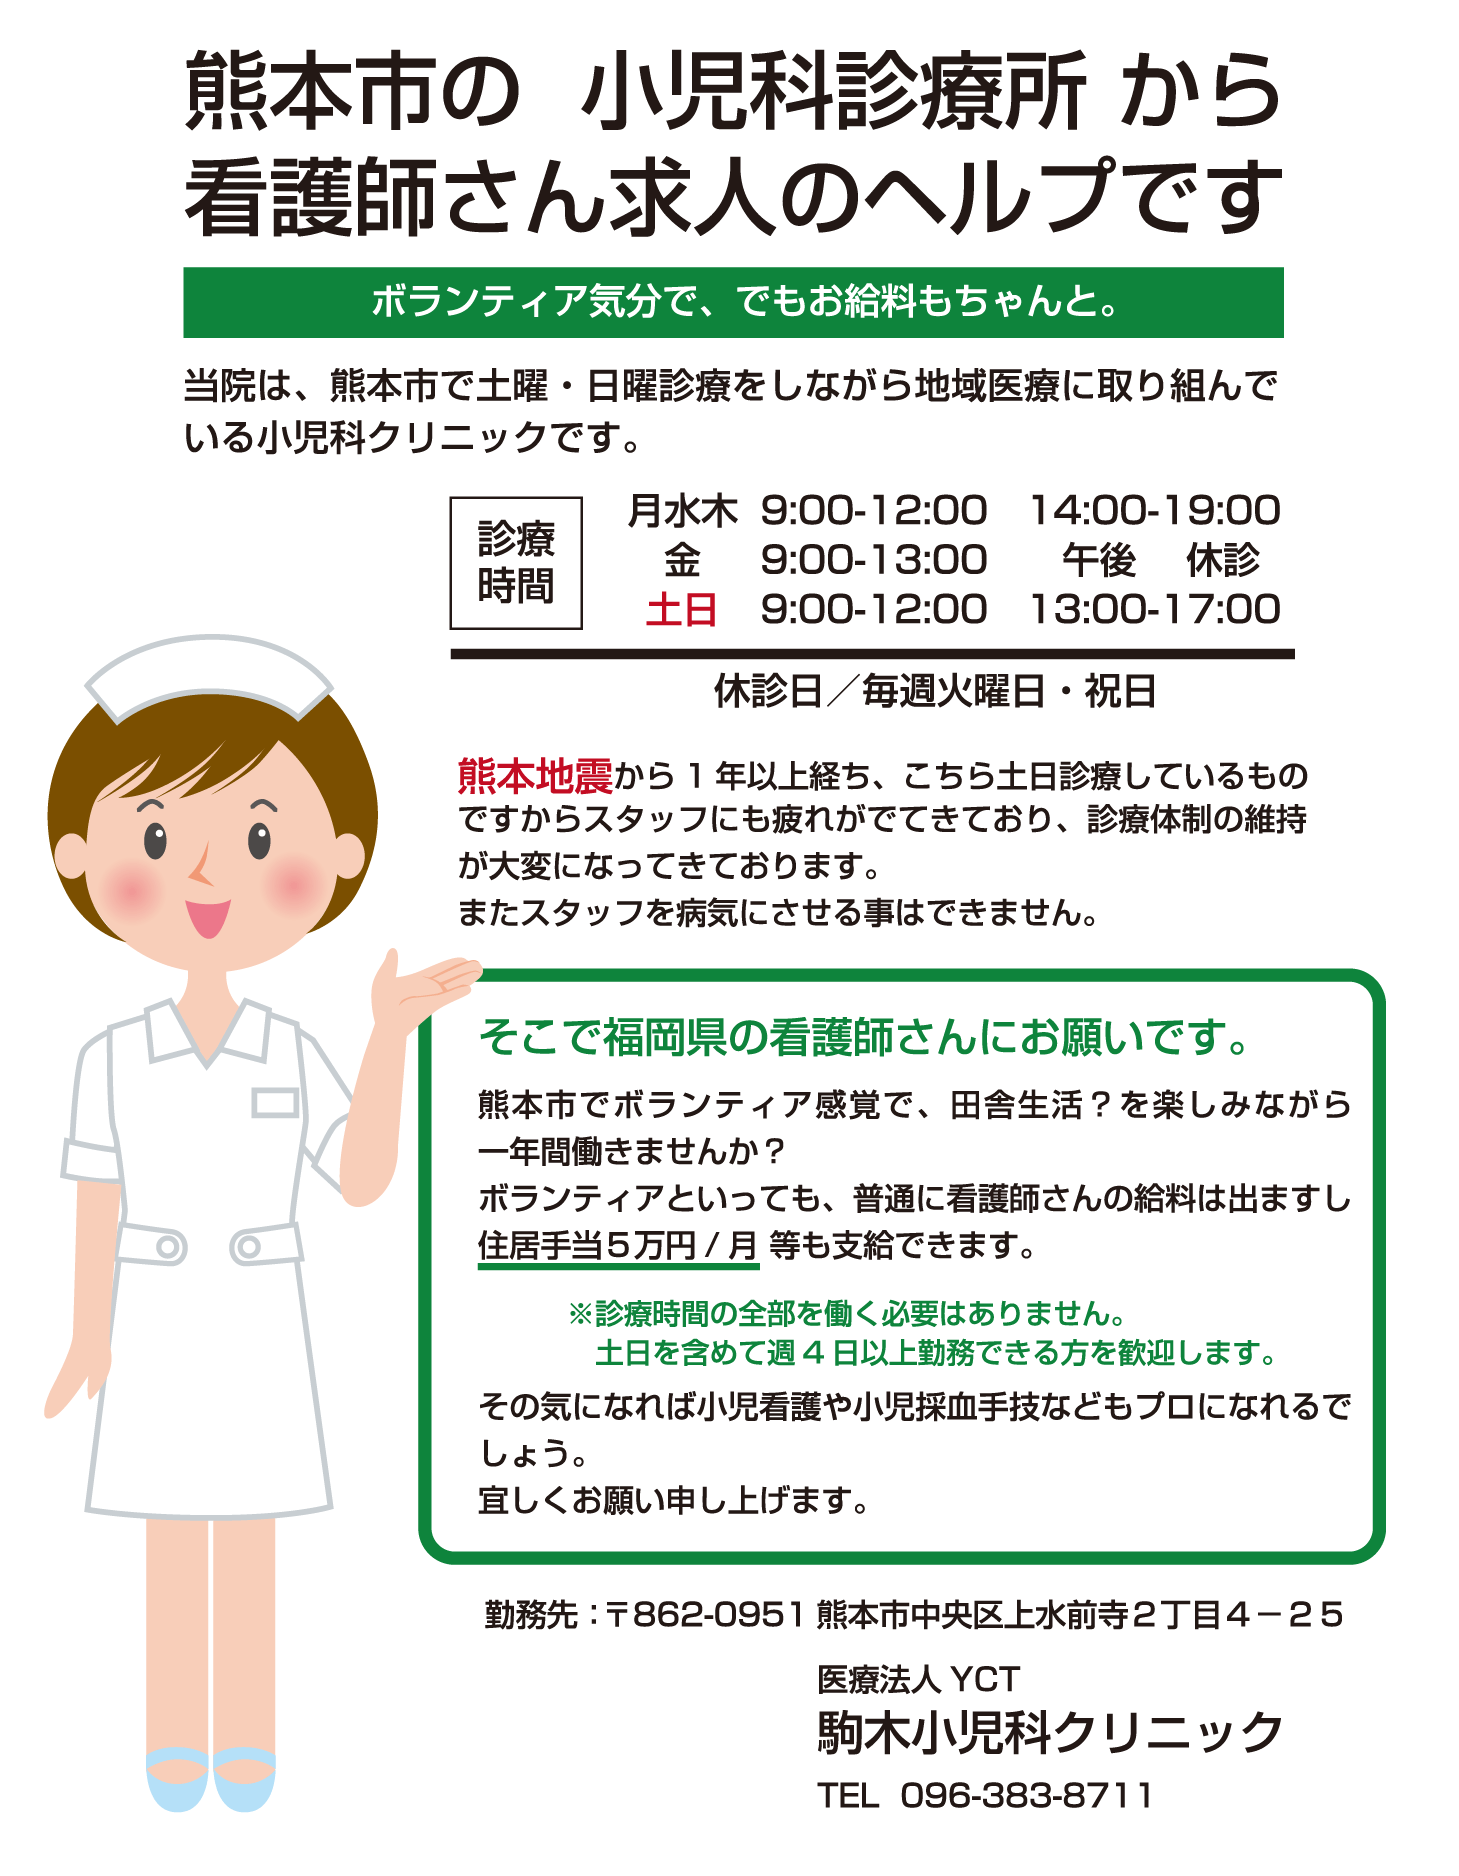 ボランティア気分で、でもお給料もちゃんと。当院は、熊本市で土曜・日曜診療をしながら地域医療に取り組んでいる小児科クリニックです。熊本地震から1 年以上経ち、こちら土日診療しているものですからスタッフにも疲れがでてきており、診療体制の維持が大変になってきております。またスタッフを病気にさせる事はできません。そこで福岡県の看護師さんにお願いです。熊本市でボランティア感覚で、田舎生活？を楽しみながら一年間働きませんか？ボランティアといっても、普通に看護師さんの給料は出ますし住居手当５万円/ 月 等も支給できます。※診療時間の全部を働く必要はありません。土日を含めて週4 日以上勤務できる方を歓迎します。その気になれば小児看護や小児採血手技などもプロになれるで
しょう。宜しくお願い申し上げます。勤務先：〒862-0951 熊本市中央区上水前寺２丁目４－２５ 医療法人YCT 駒木小児科クリニック TEL 096-383-8711